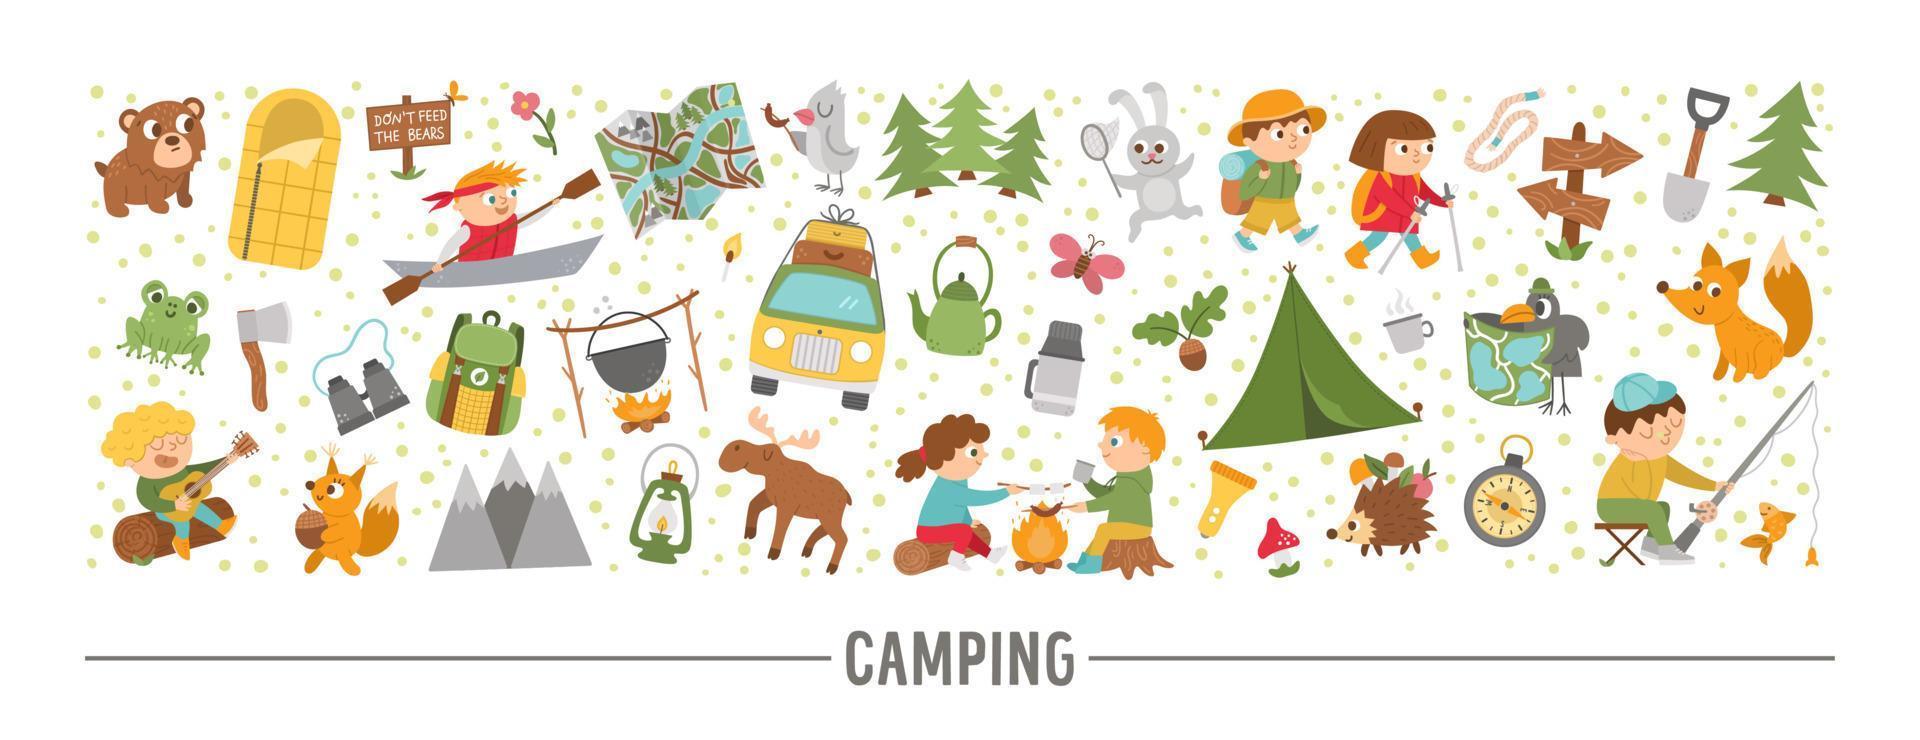 conjunto horizontal vectorial con lindos animales cómicos del bosque, elementos y niños haciendo actividades de campamento de verano. diseño de borde de plantilla de tarjeta con personajes del bosque y niños en vacaciones. vector